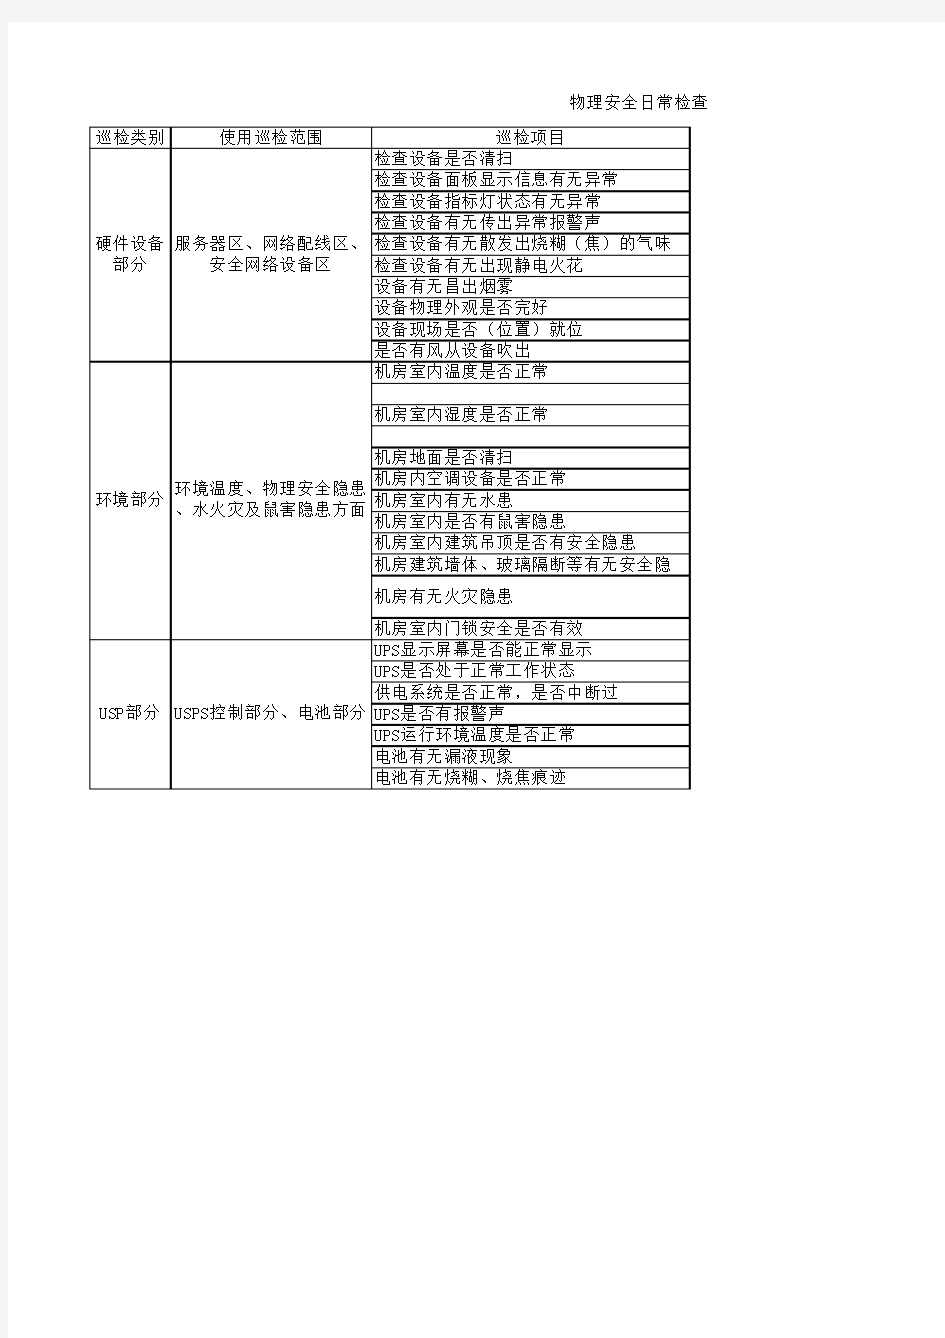 贵州新华电脑学院——机房物理安全日常检查表